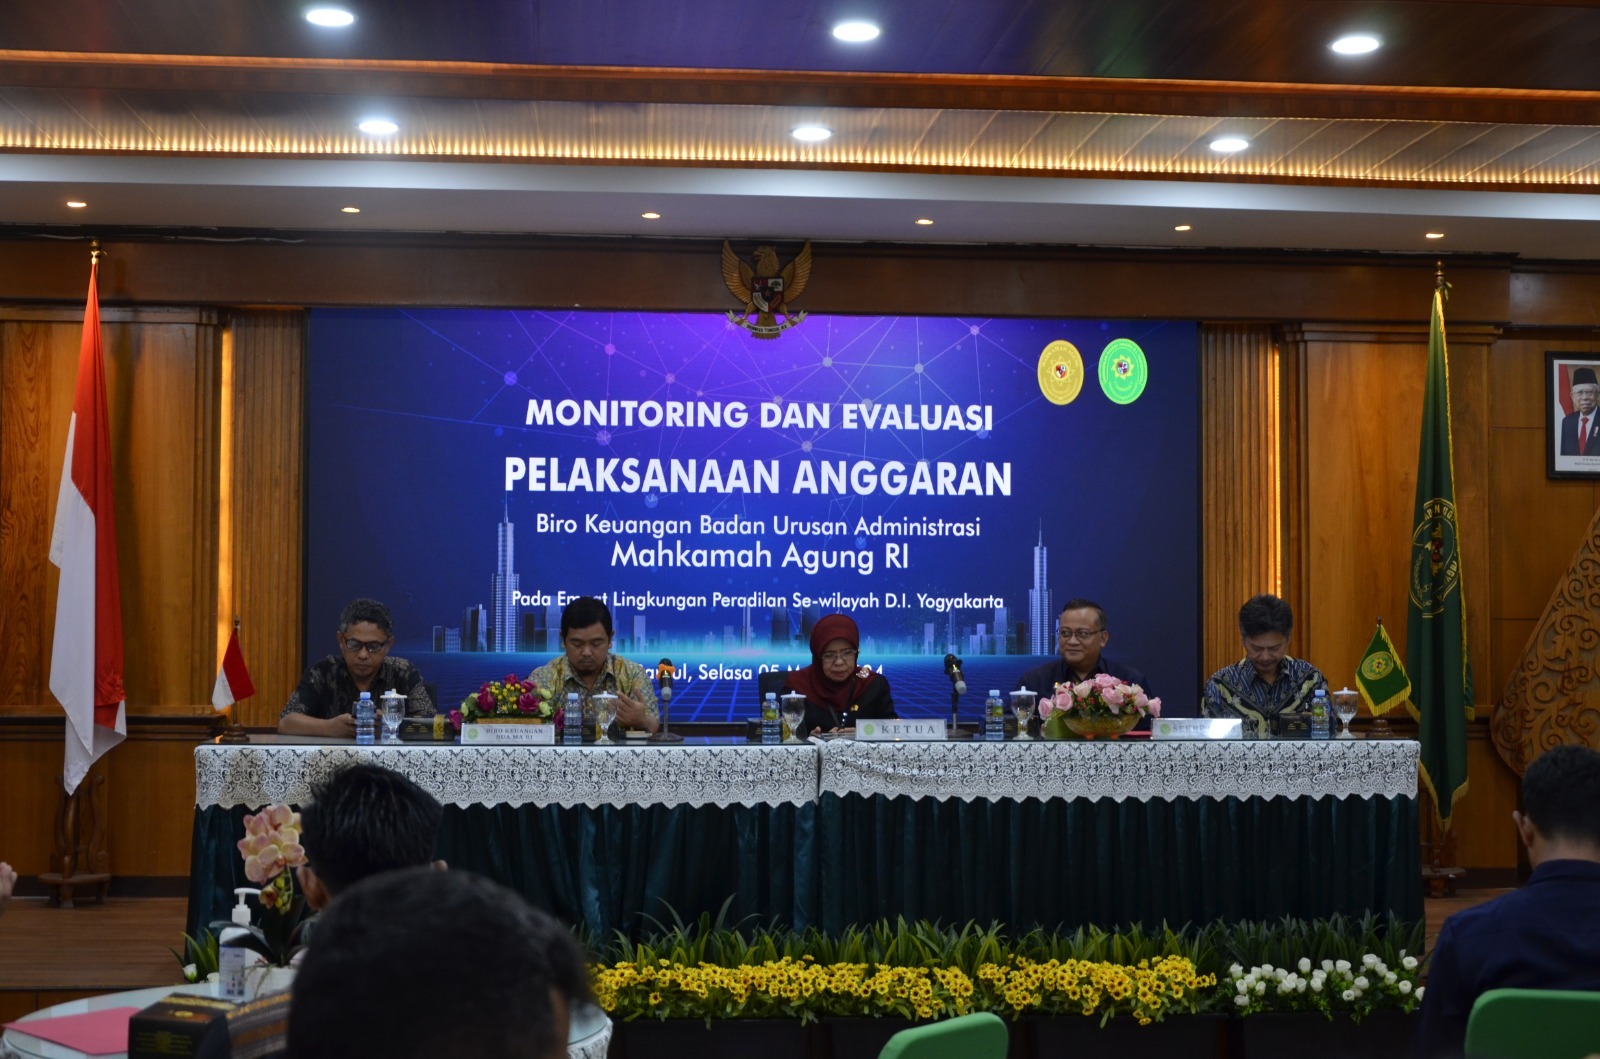 Pengadilan Negeri Yogyakarta Menghadiri Pembinaan Pelaksanaan Anggaran di Wilayah Yogyakarta